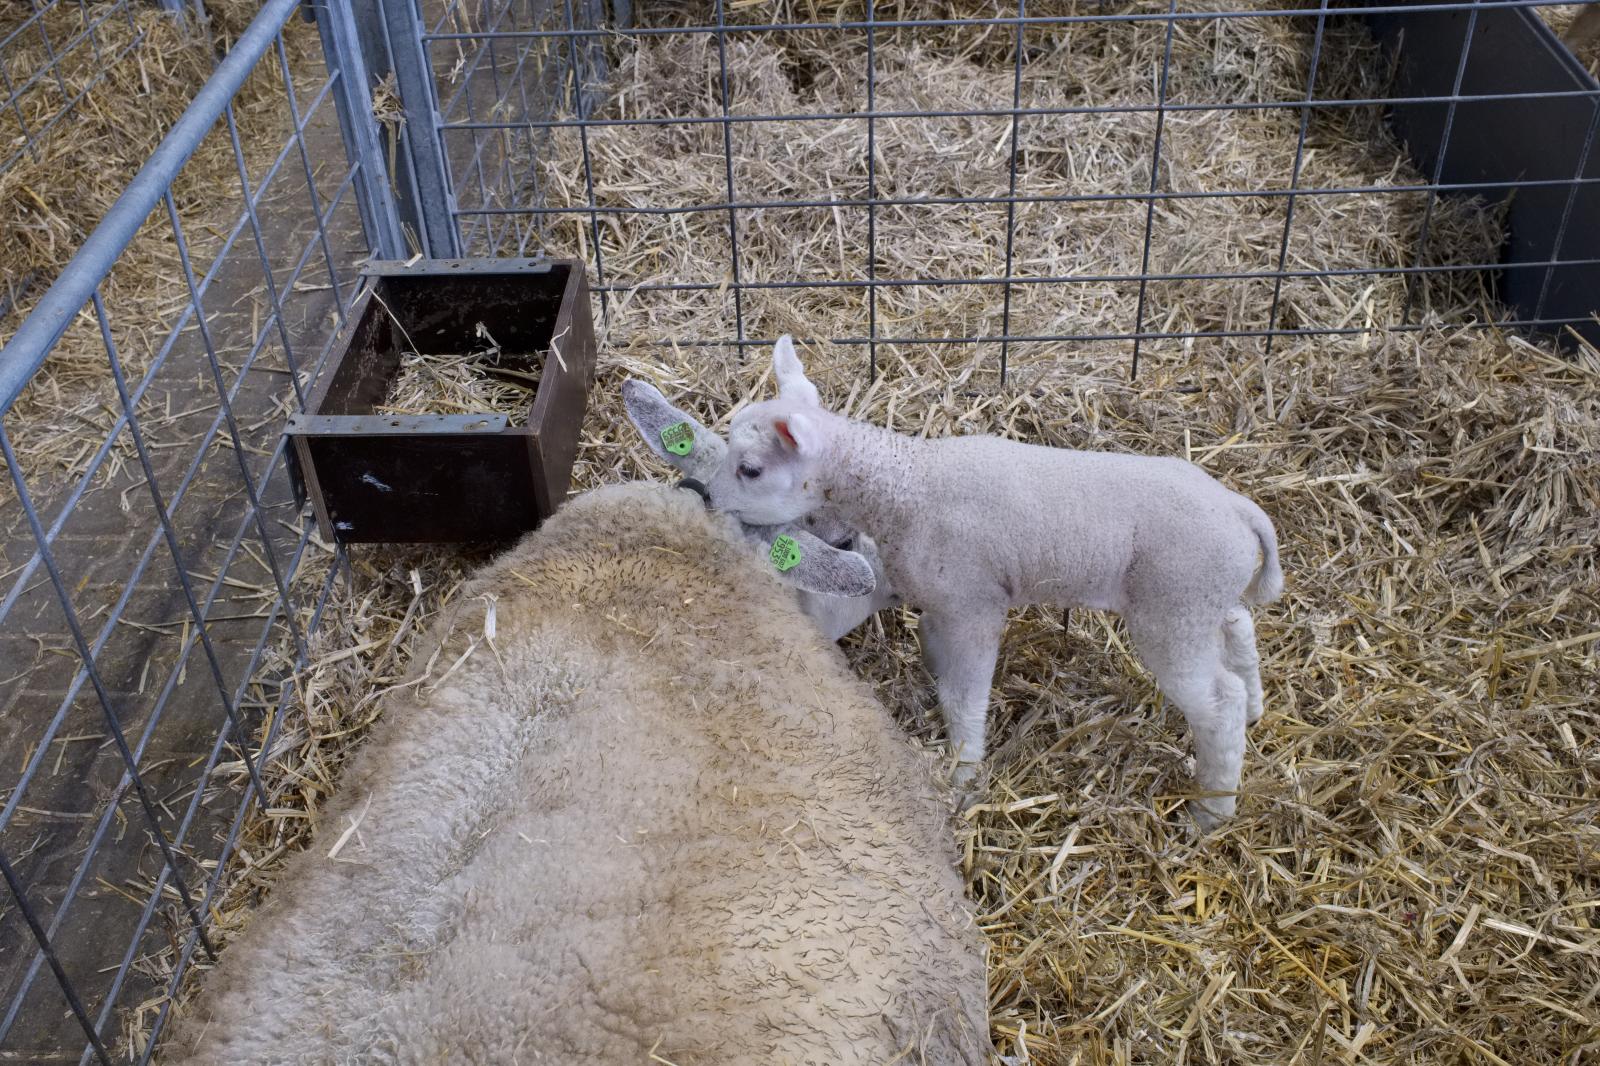 Texel Sheep and Lambs